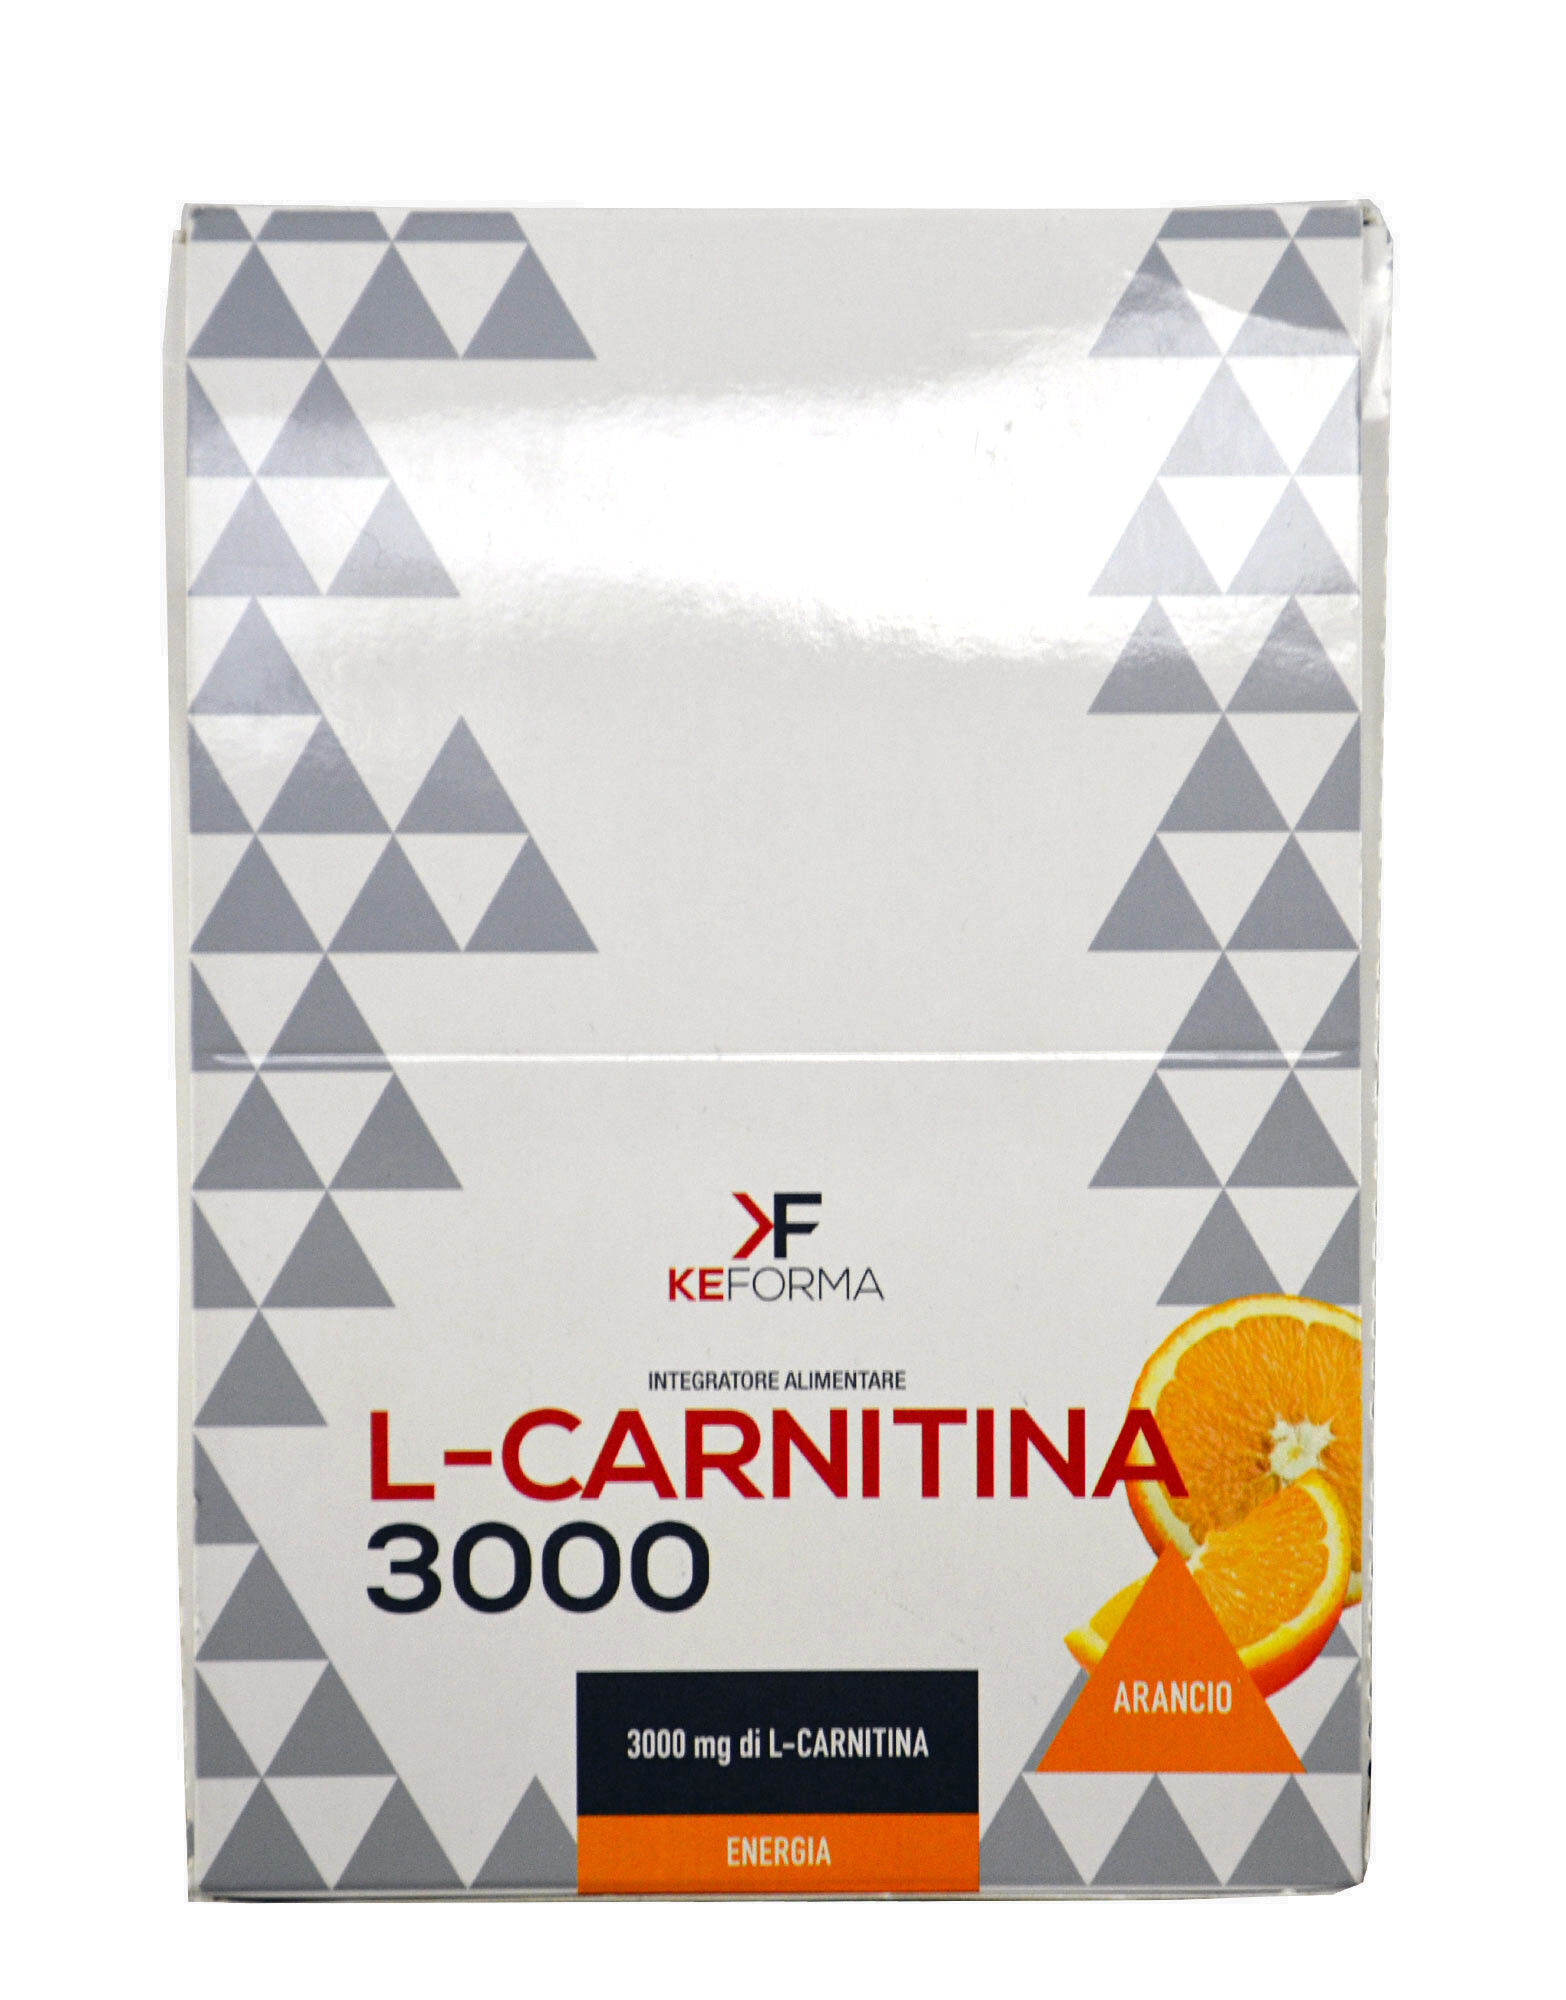 KEFORMA L-Carnitina 3000 24 Fiale Da 25ml Arancia